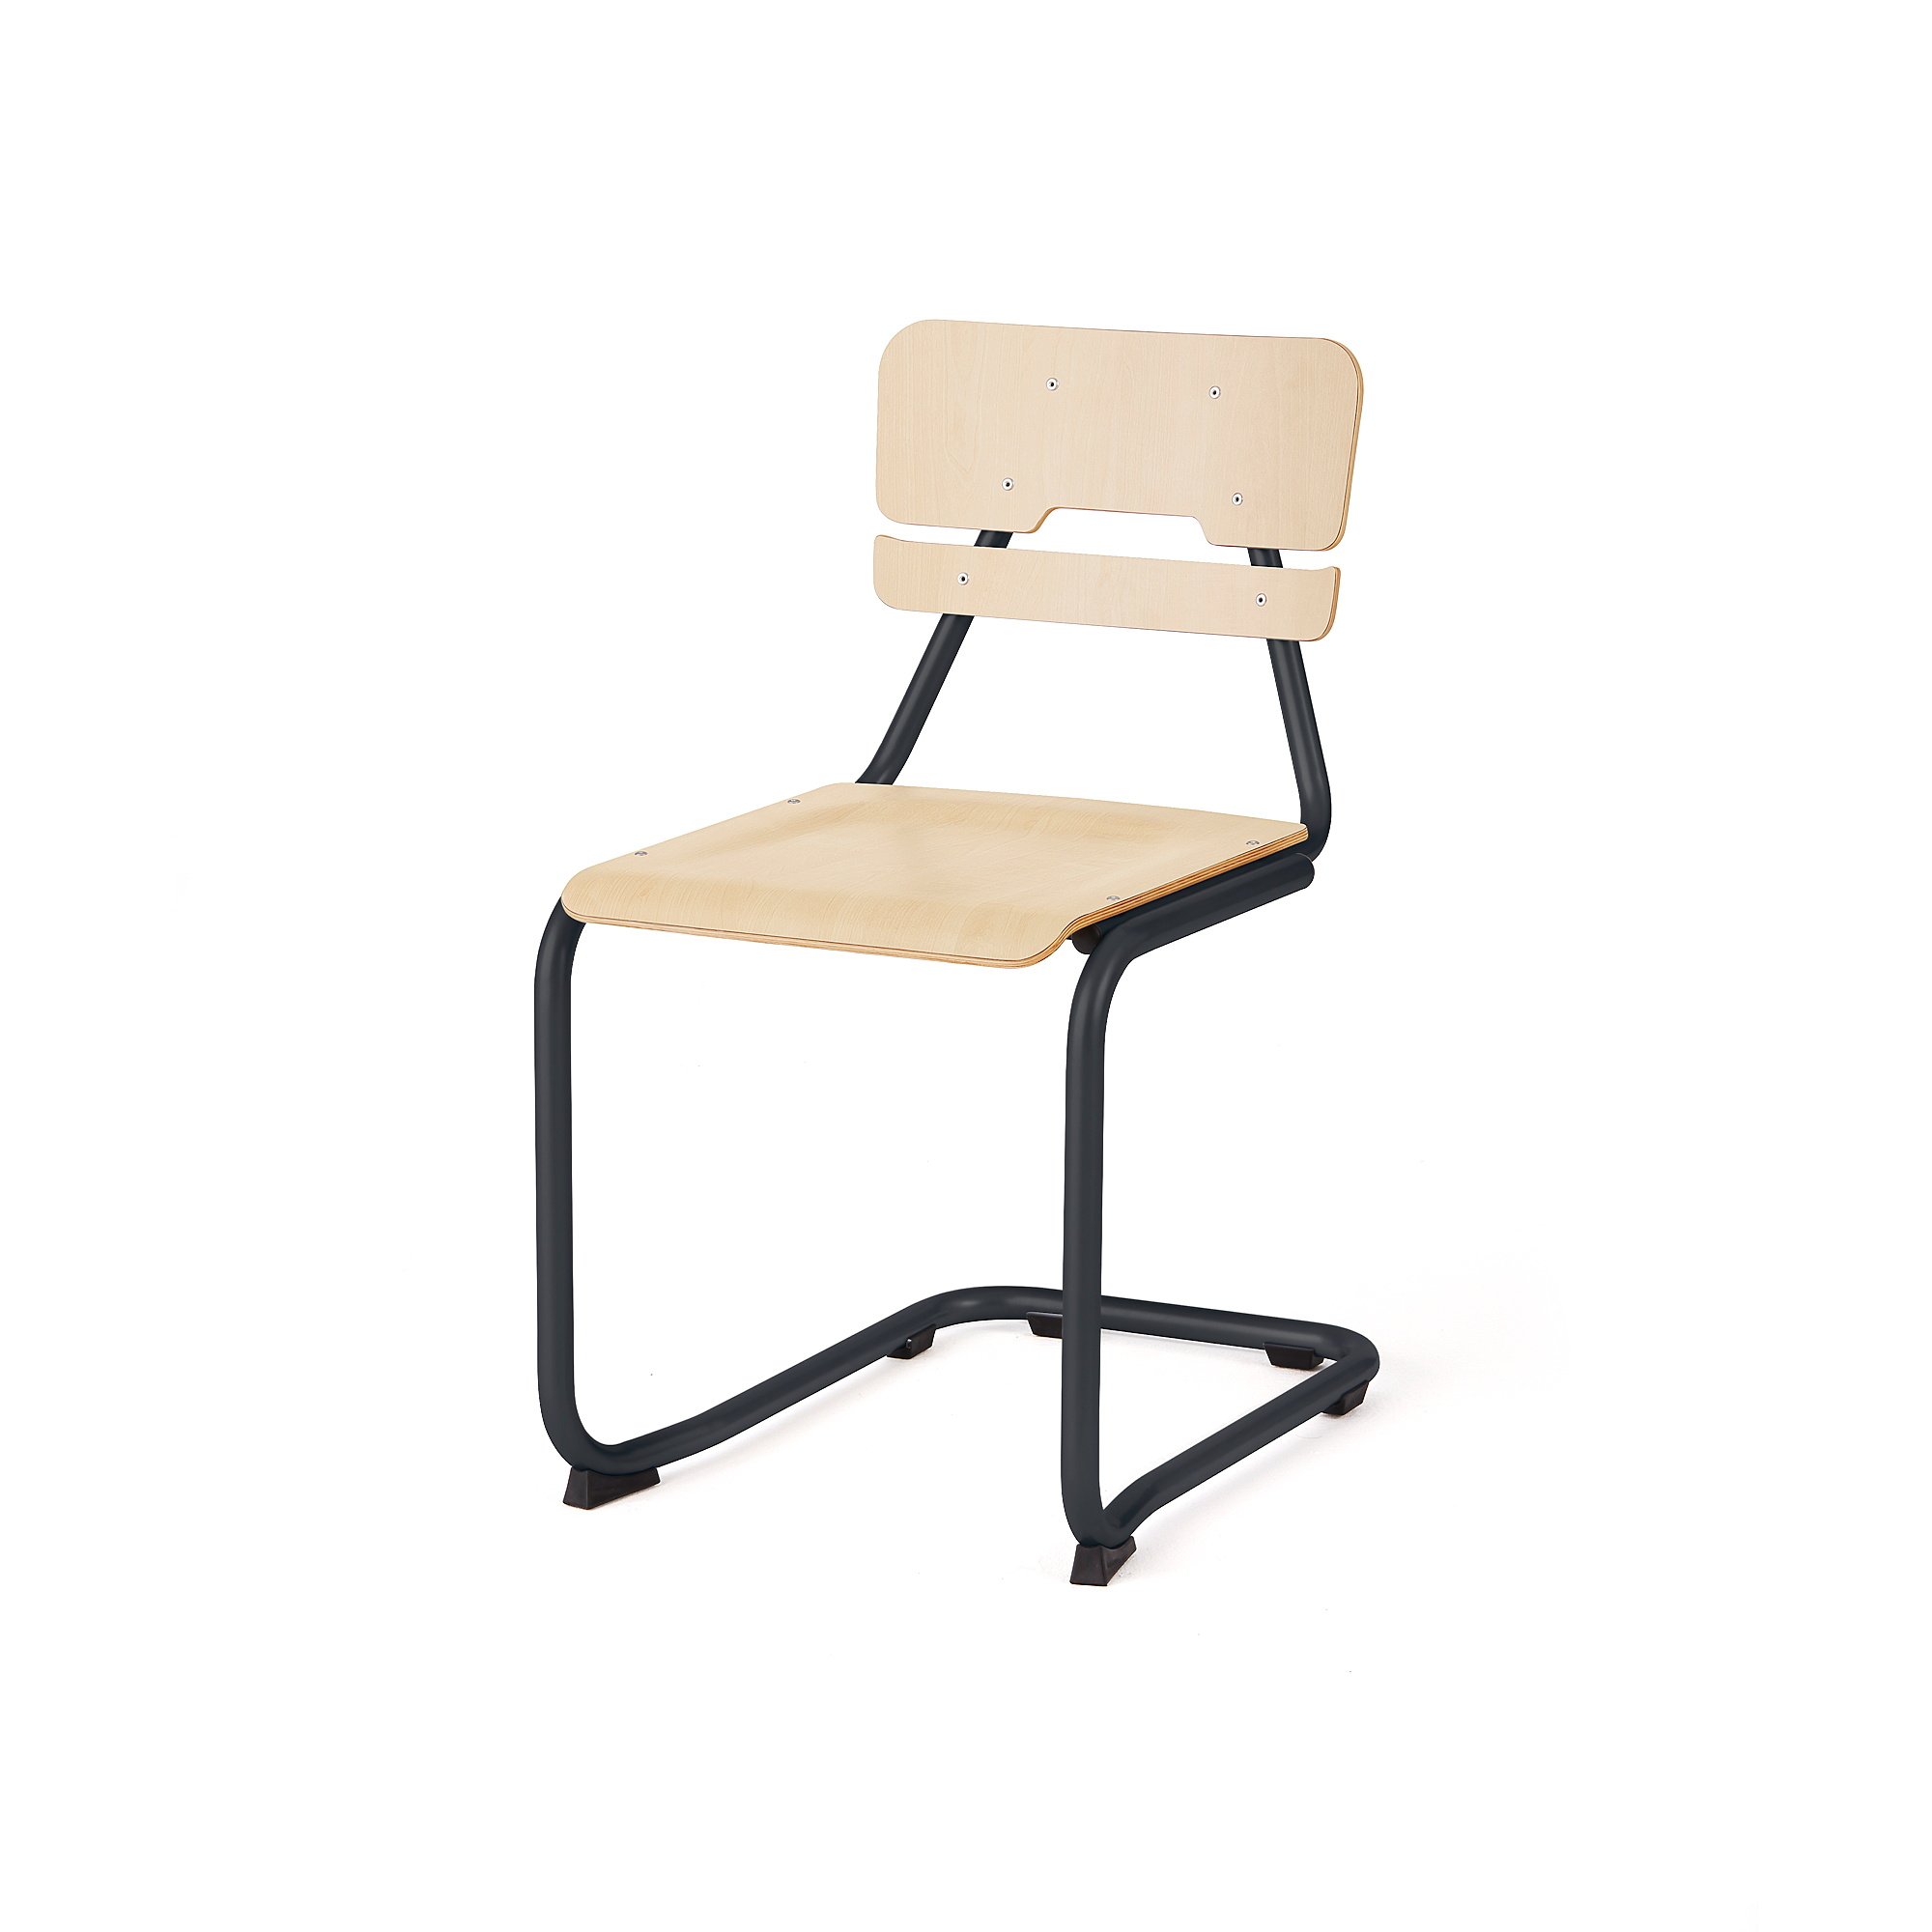 Školní židle LEGERE II, výška 450 mm, antracitově šedá, bříza